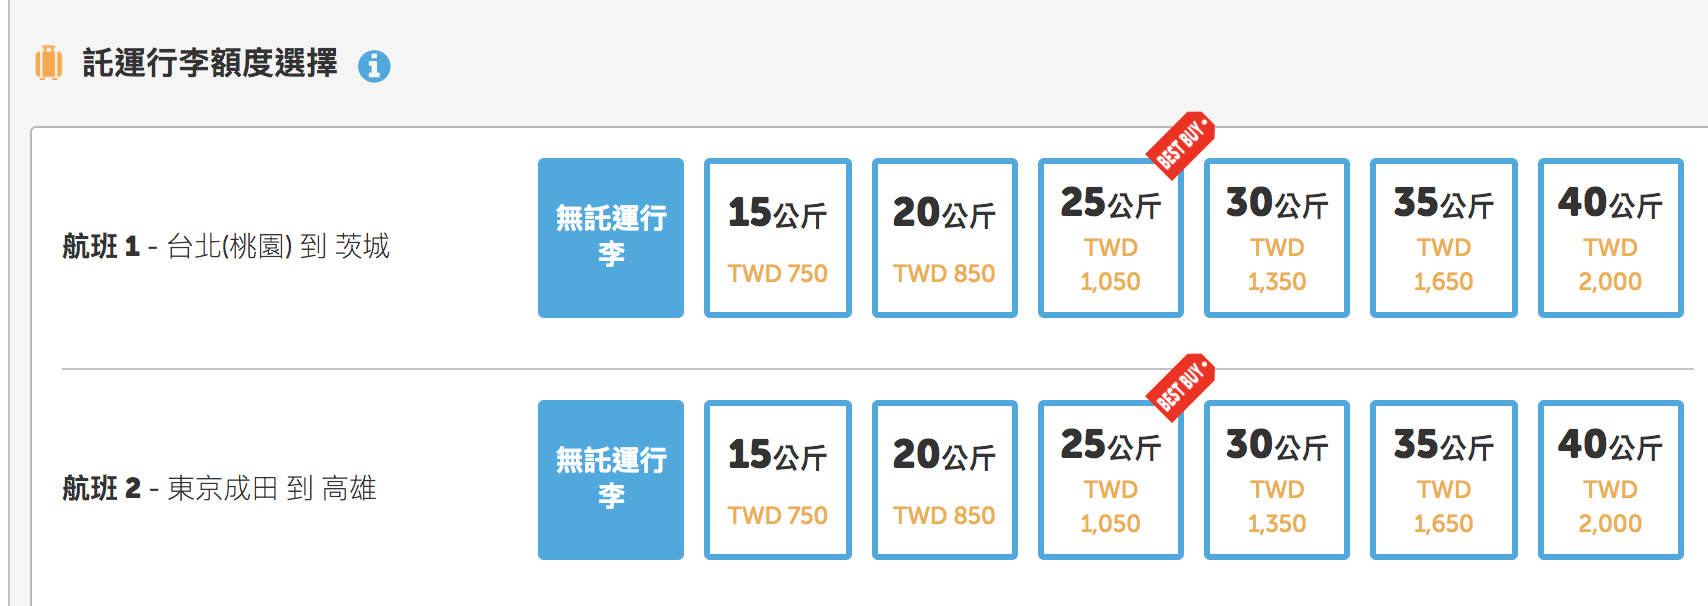 台灣虎航2019夏季航班開賣，2019/3/31-2019/10/26，買好一整年的美麗票價吧！